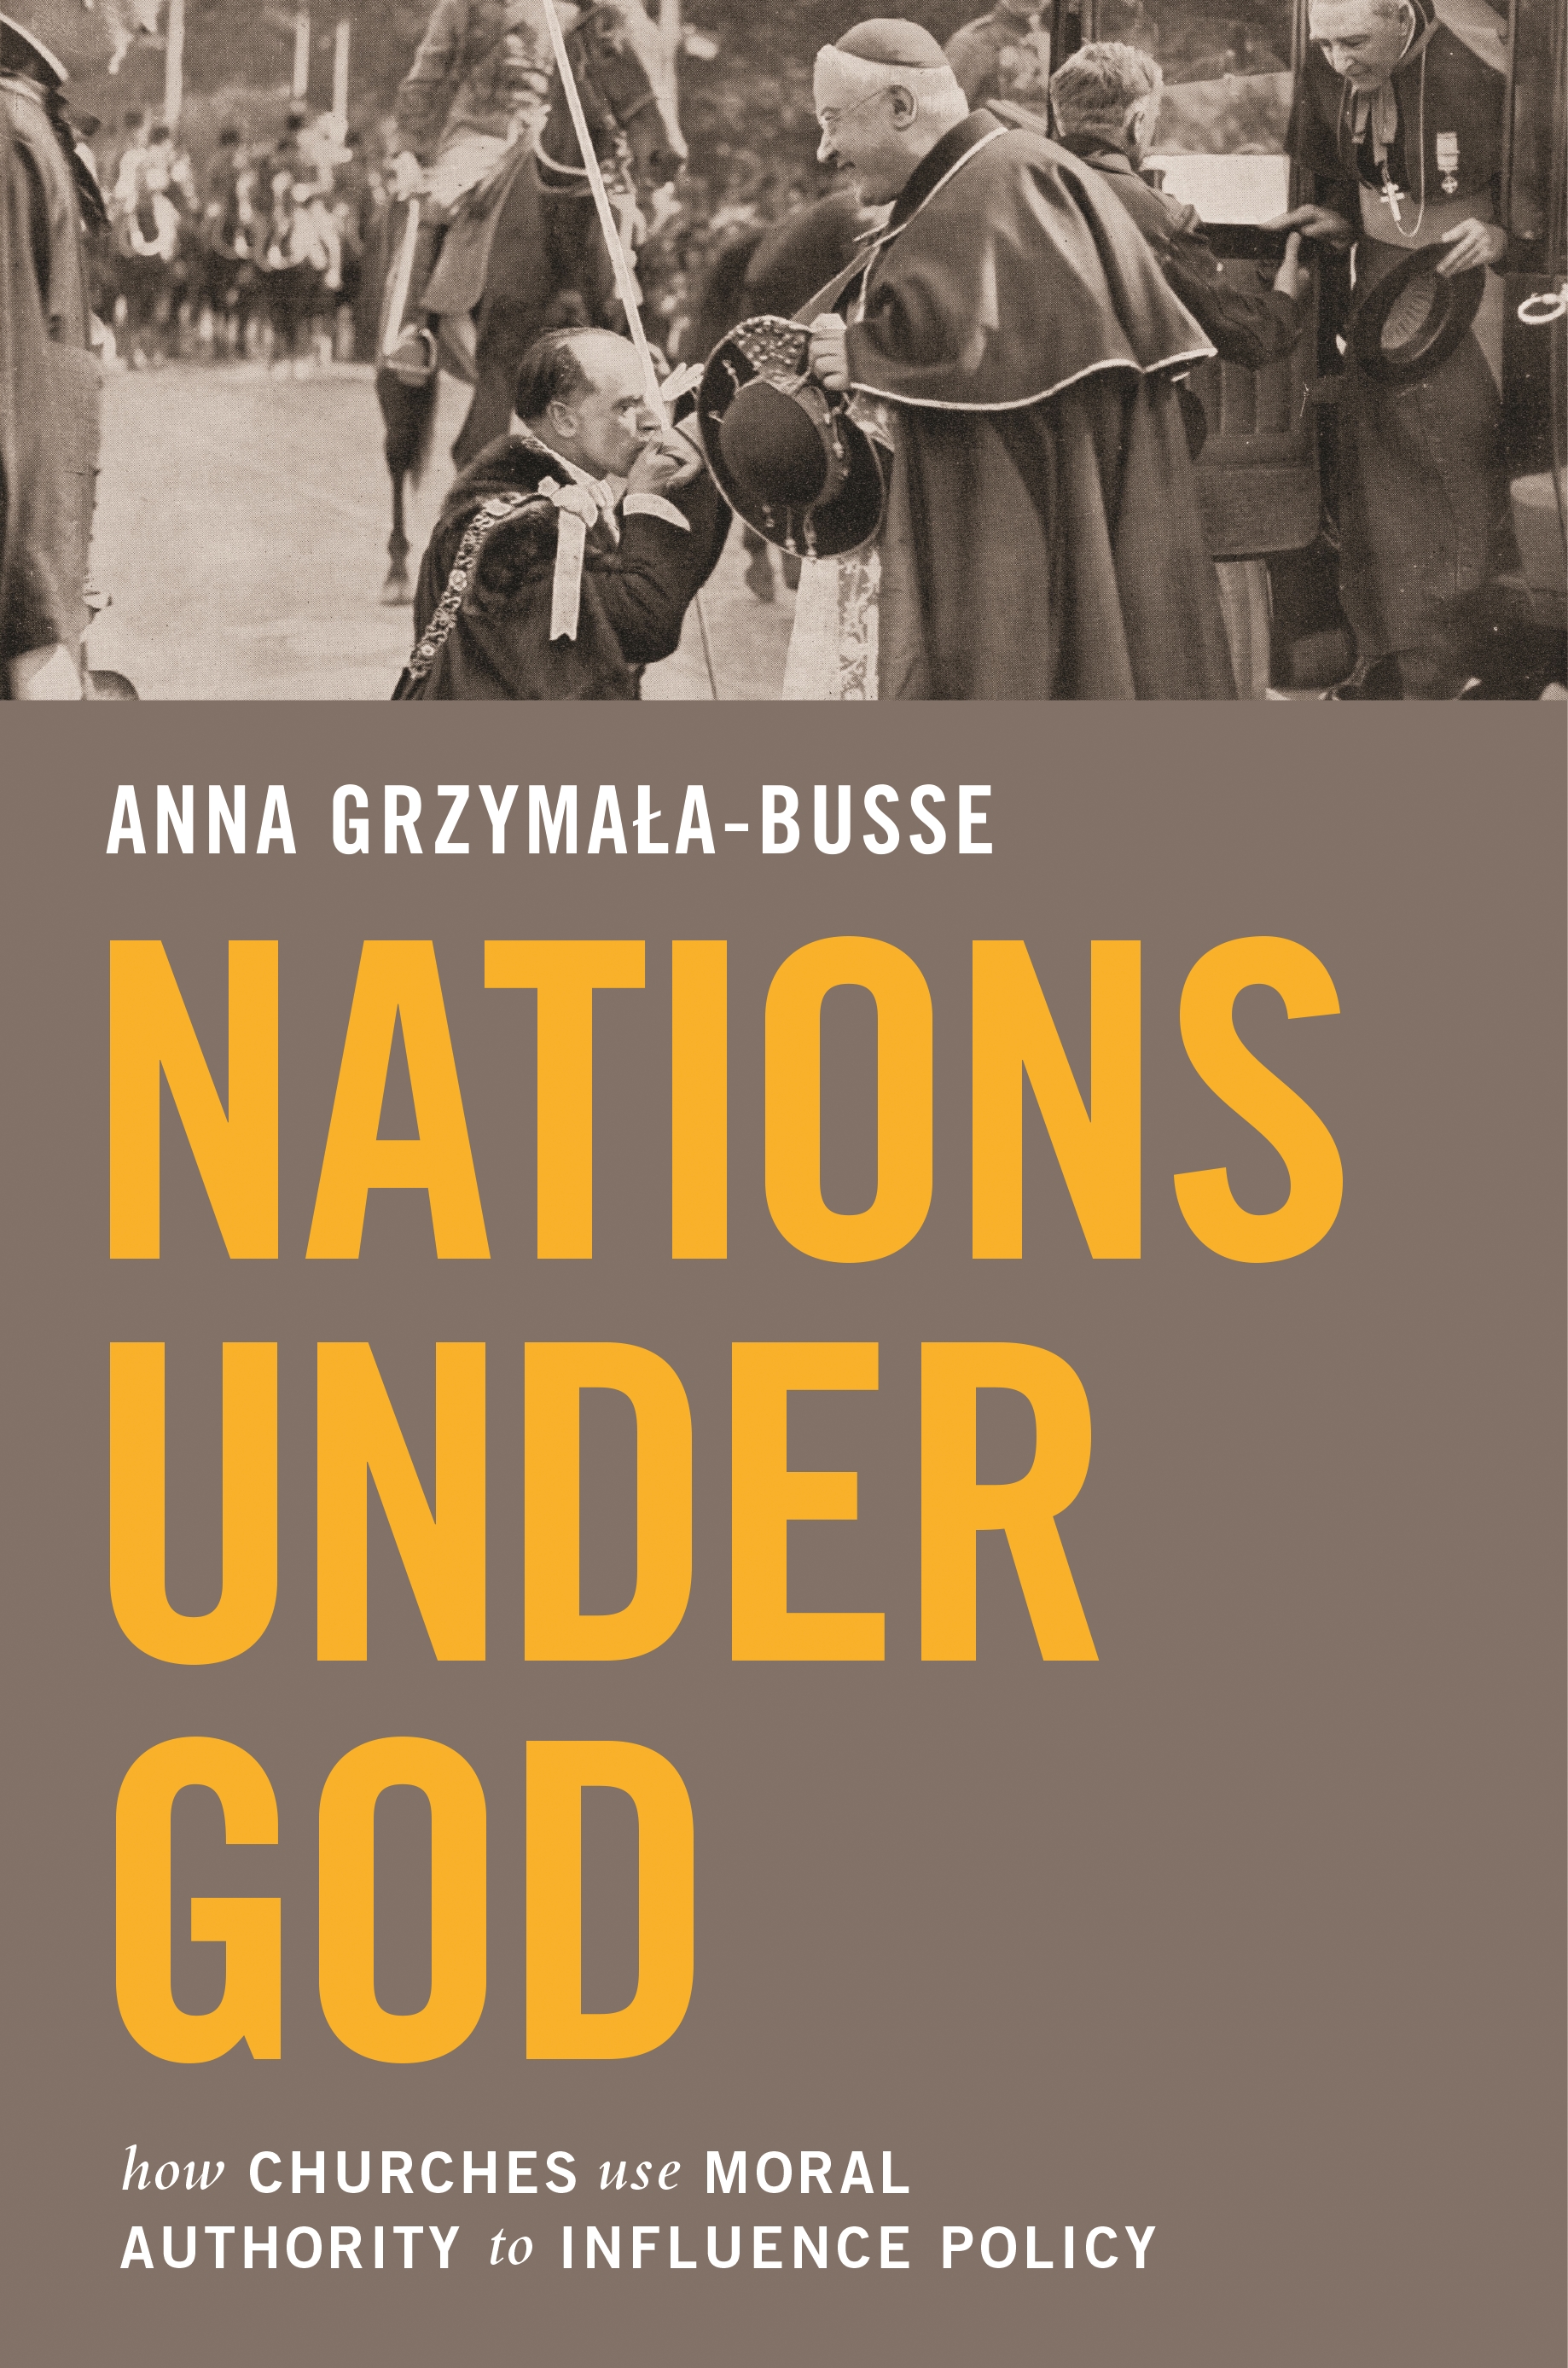 Nations　God　under　Princeton　University　Press